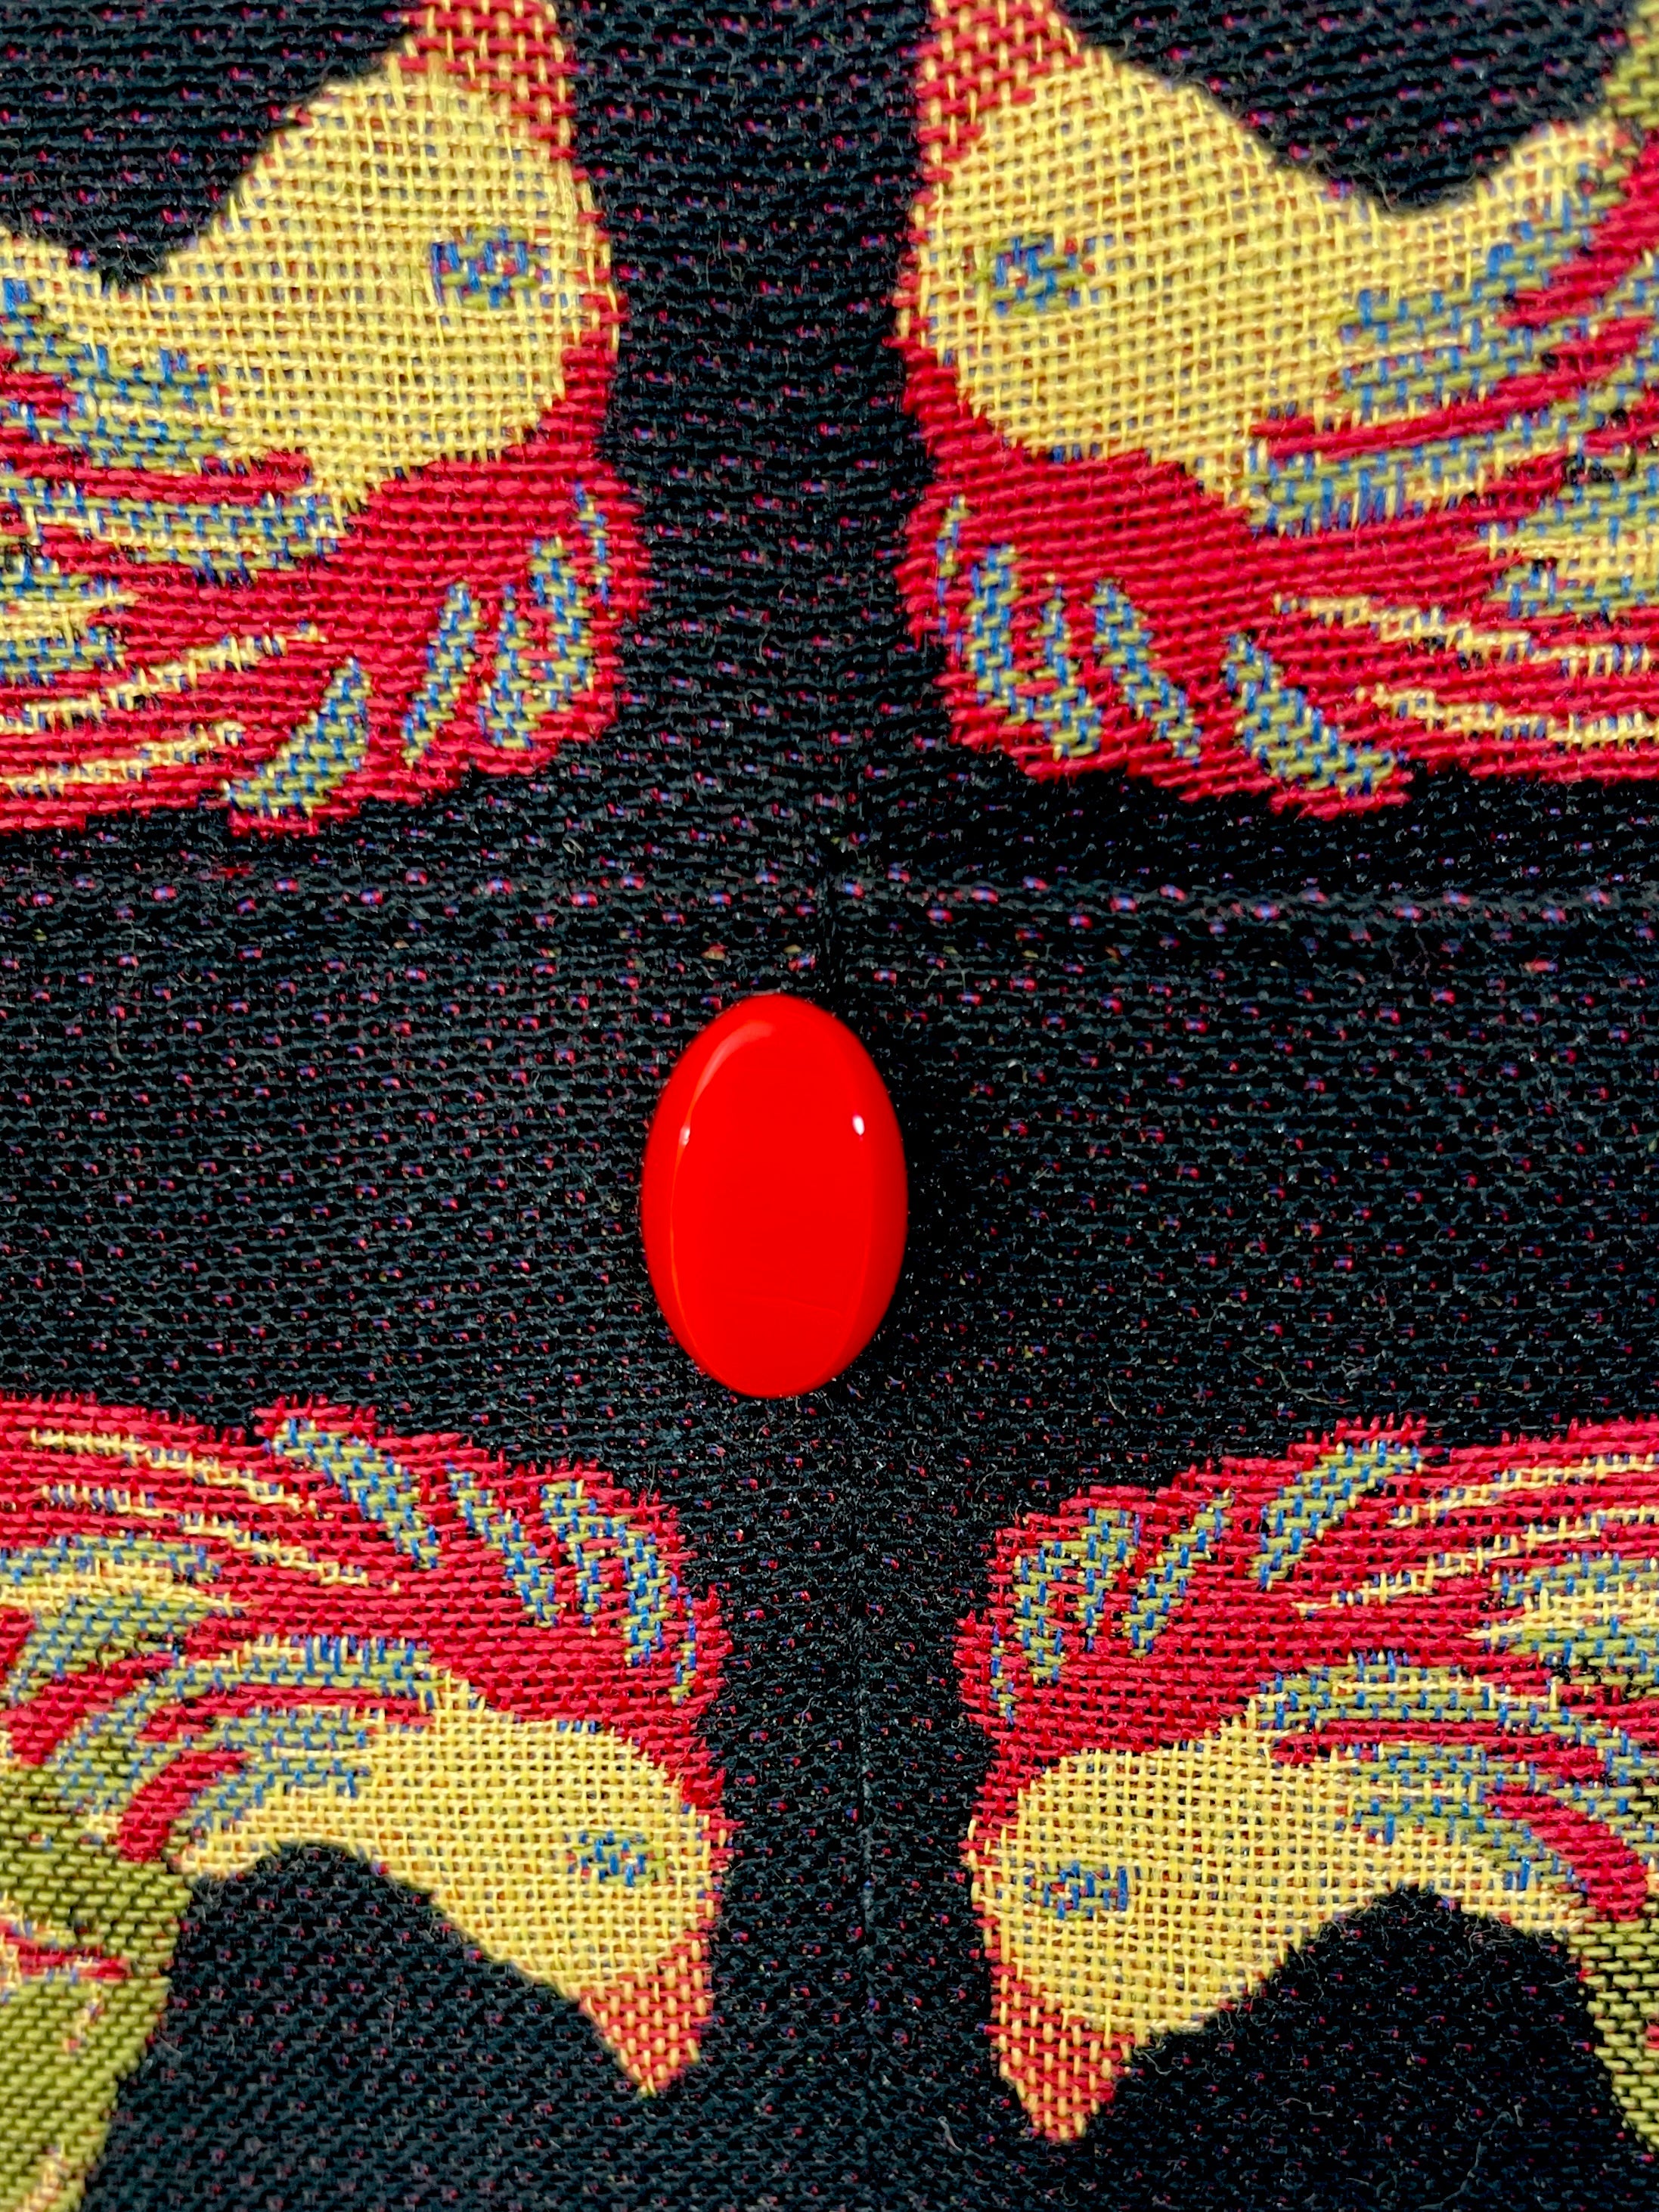 Evita Grande Bag in Bird Tapestry